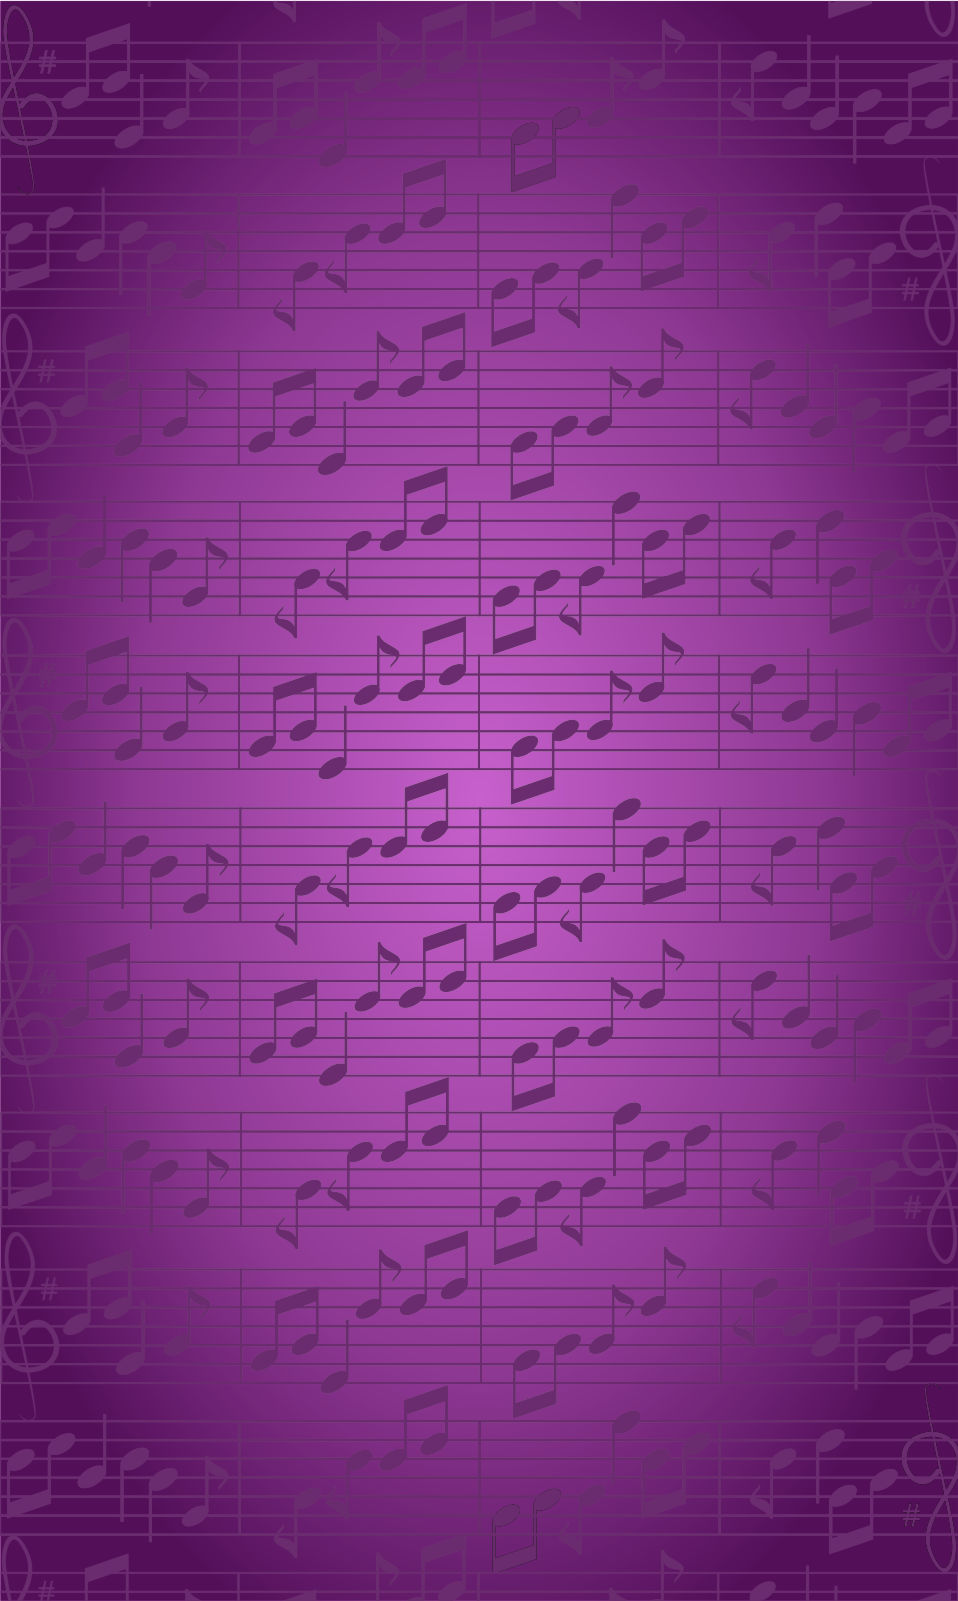 Wallpaper Musik Hd Android Terkini2 - Handwriting - HD Wallpaper 